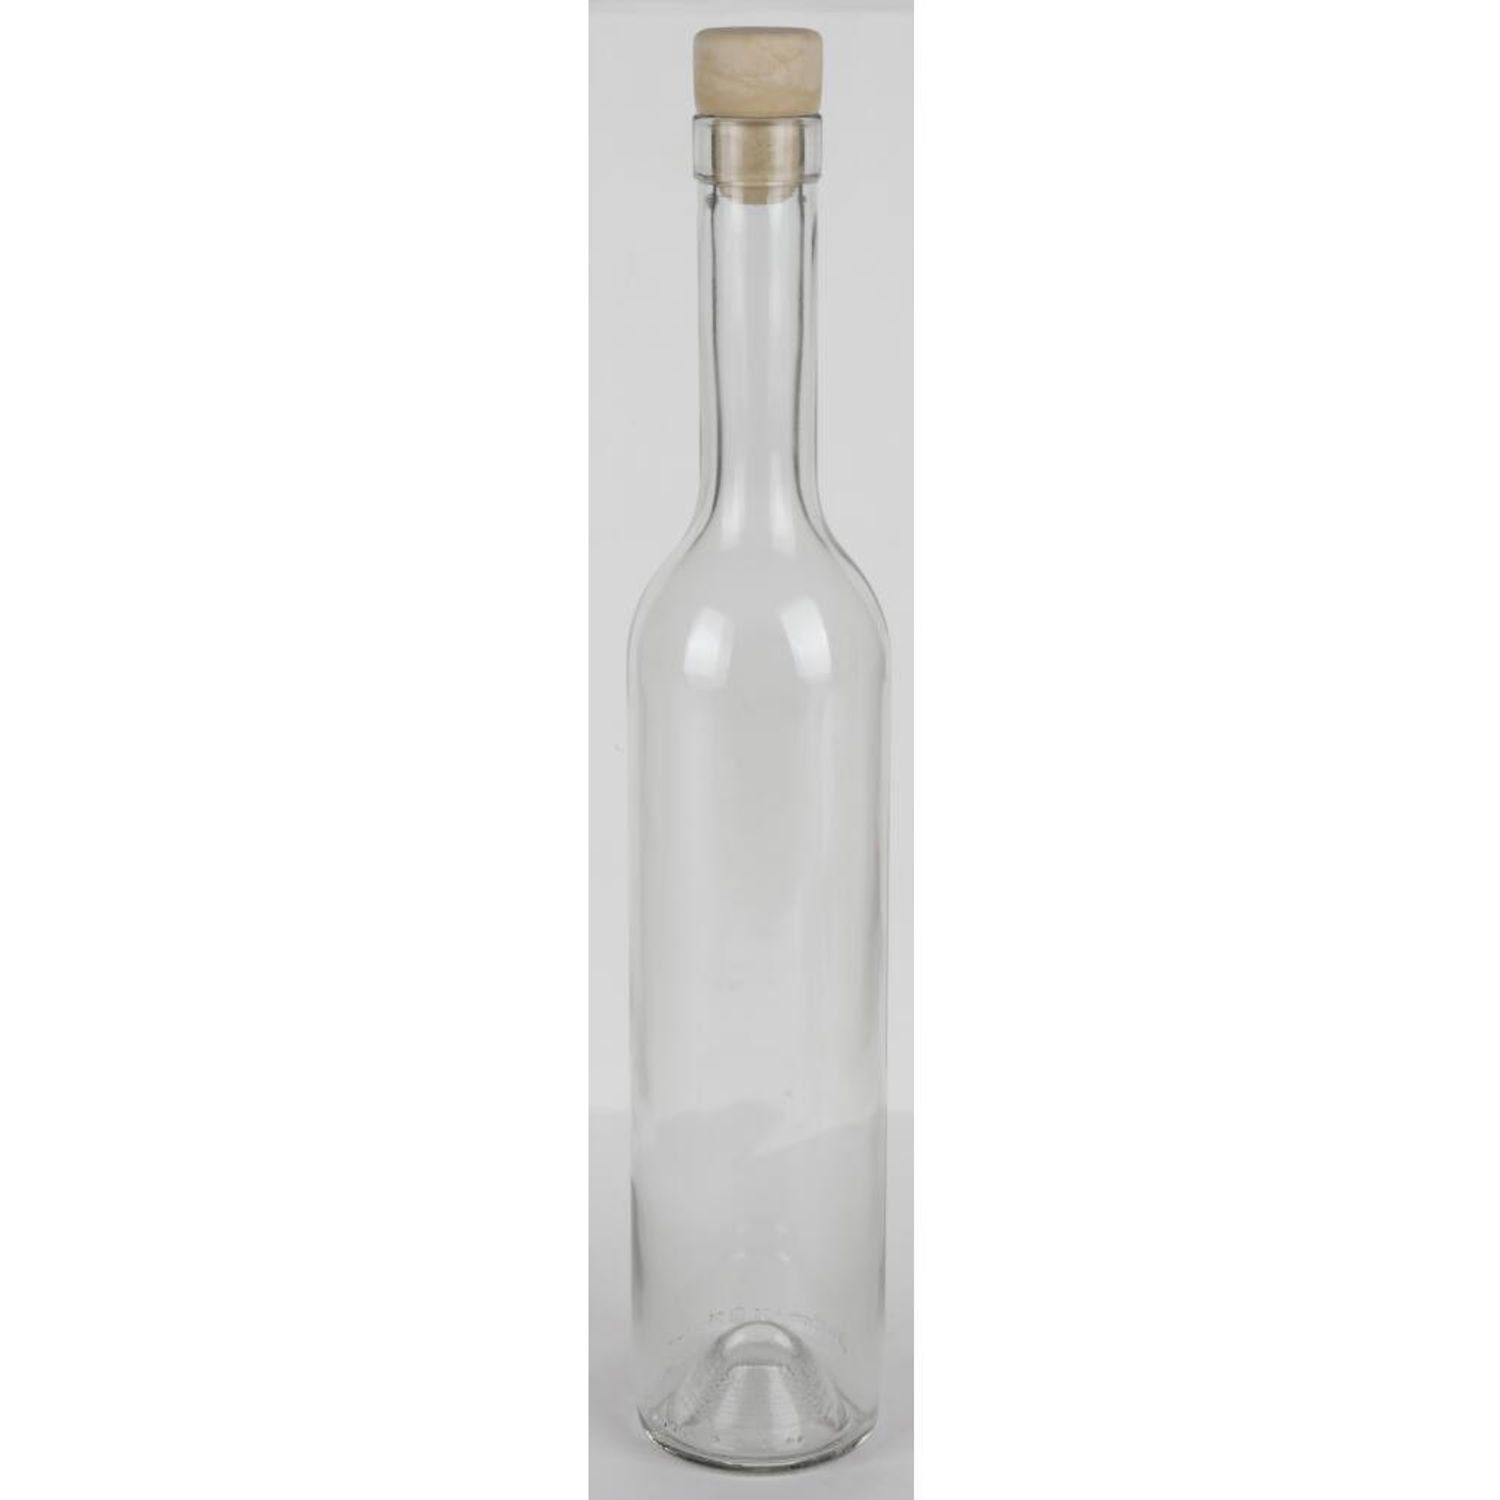 Vorrat Glas Etikett Omega Glasflasche Korkenverschluss Spolka Vorratsdose 15x 500ml Leer S, Primavera Jawna